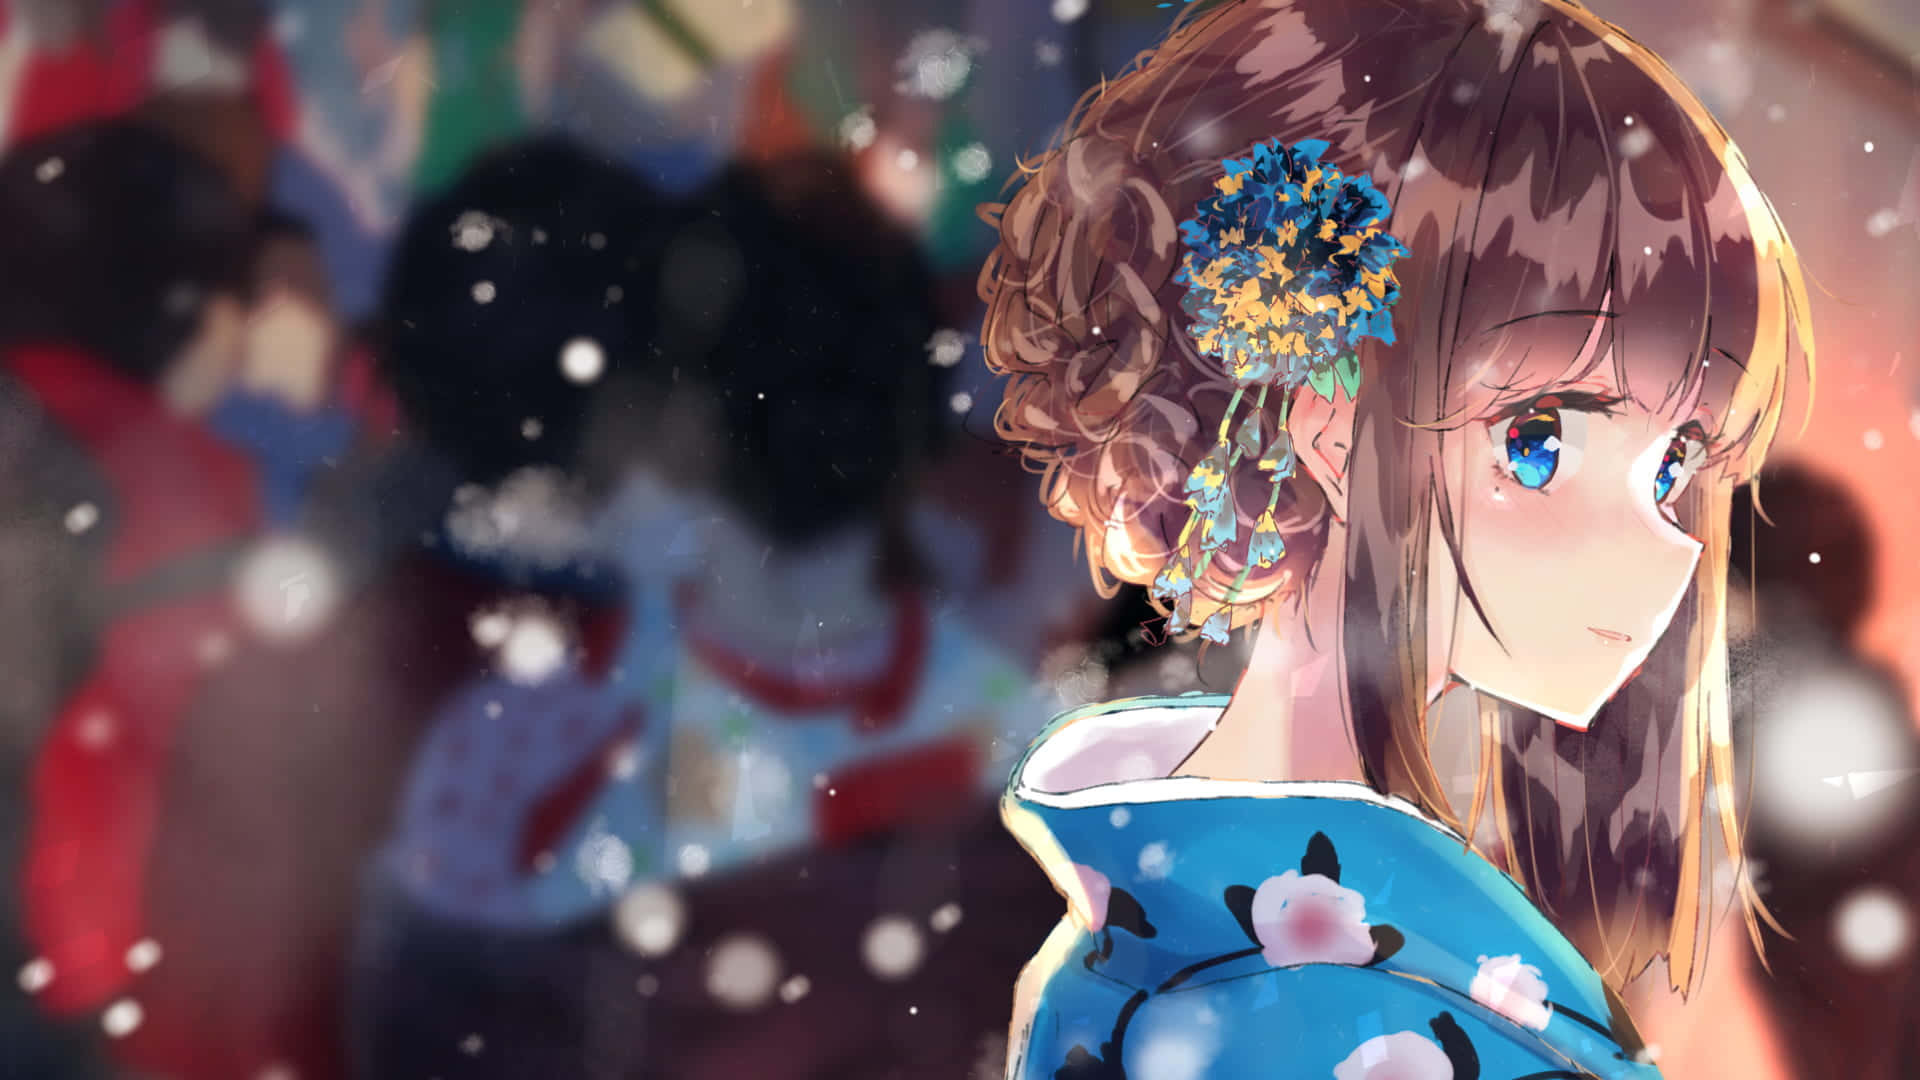 Profilbildmit Blauäugigem Anime-mädchen